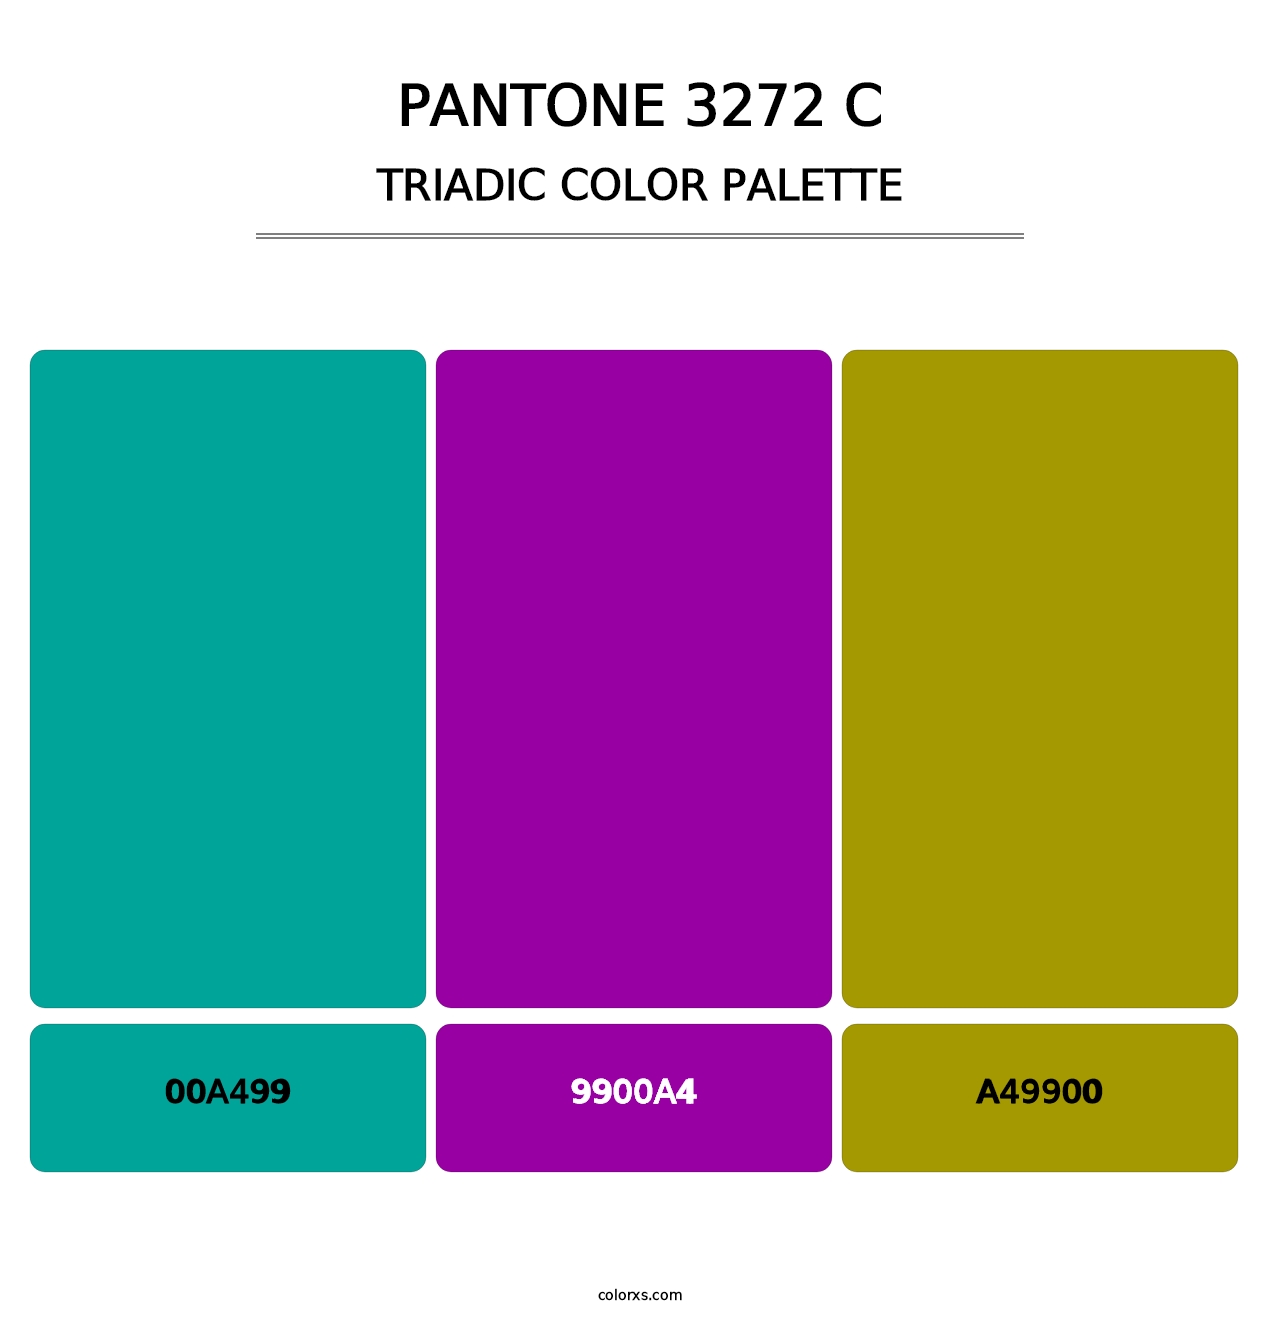 PANTONE 3272 C - Triadic Color Palette